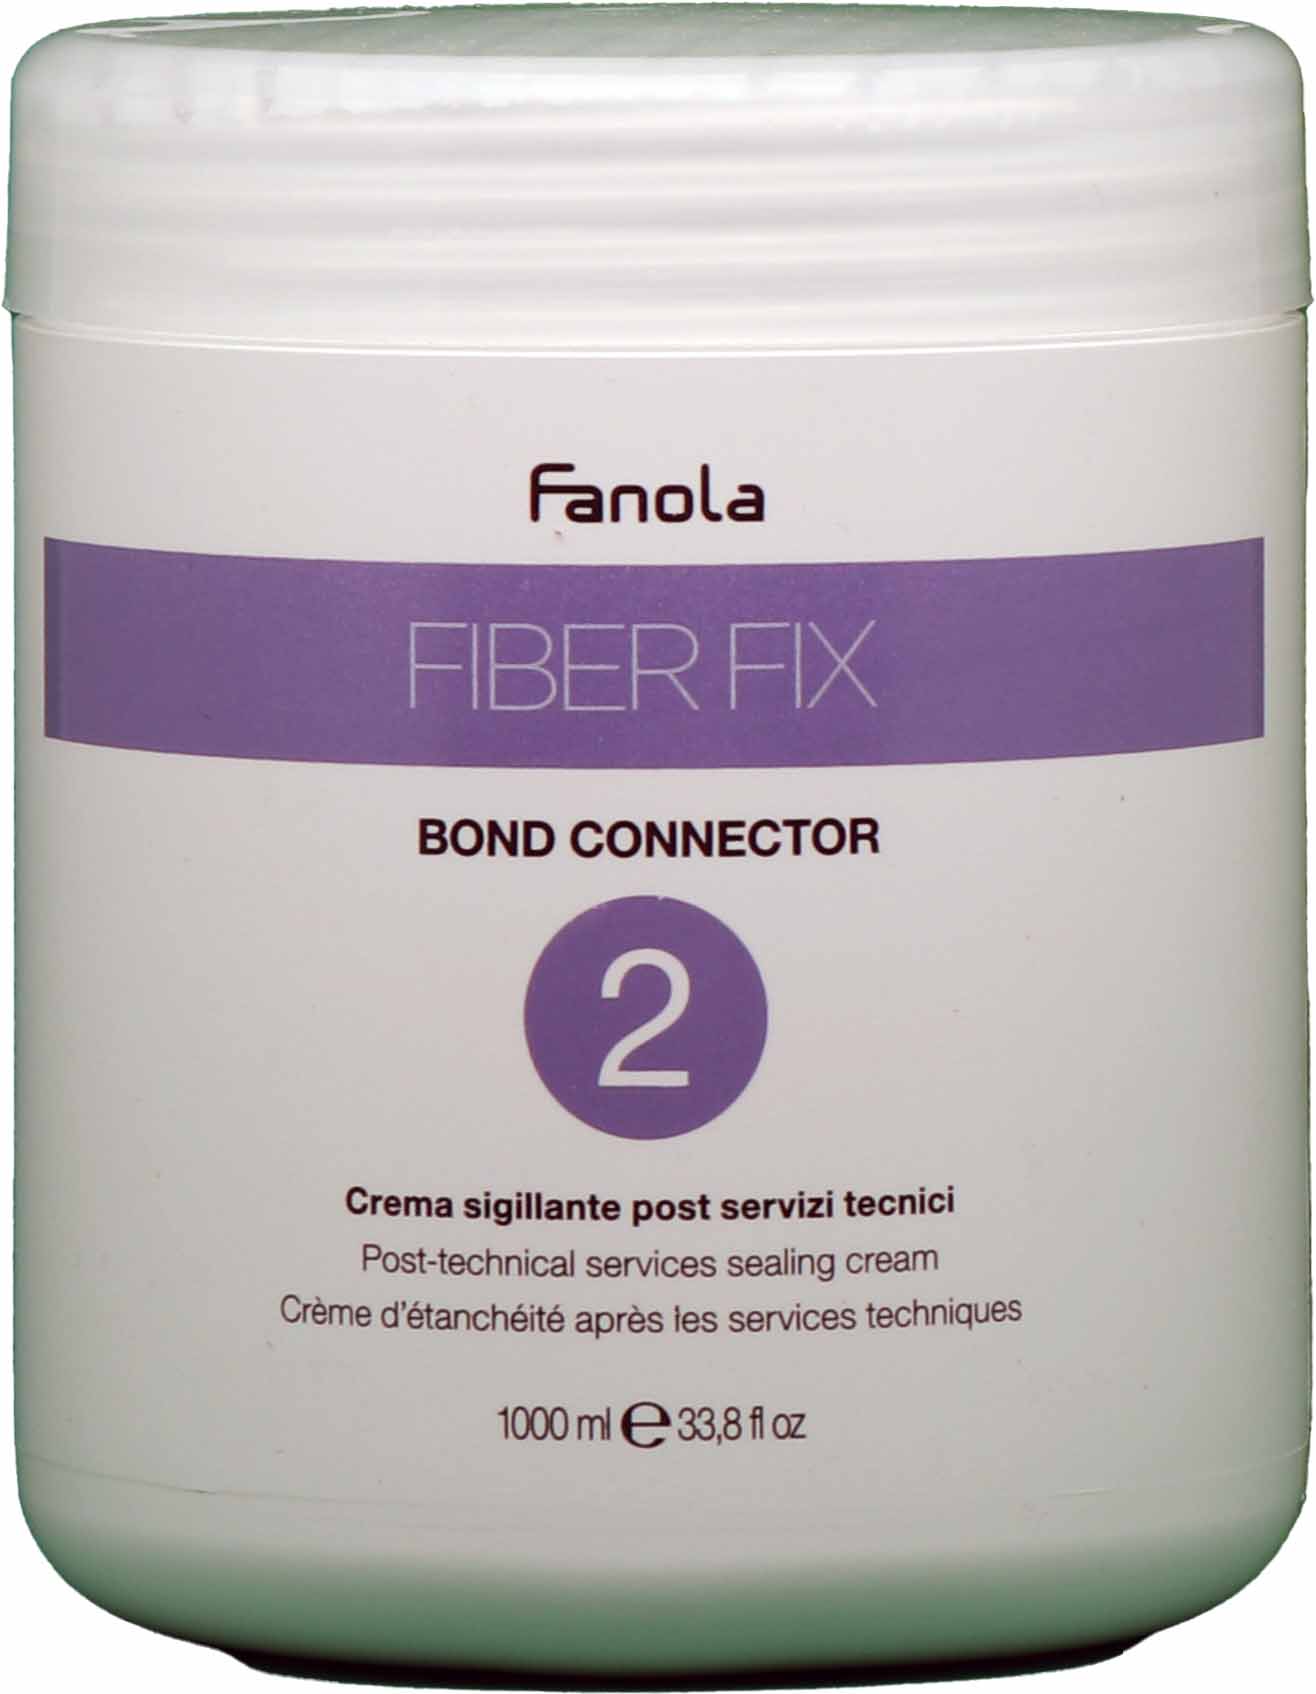 Fanola Fiber Fix Bond Connector N.2 Crema 1000ml